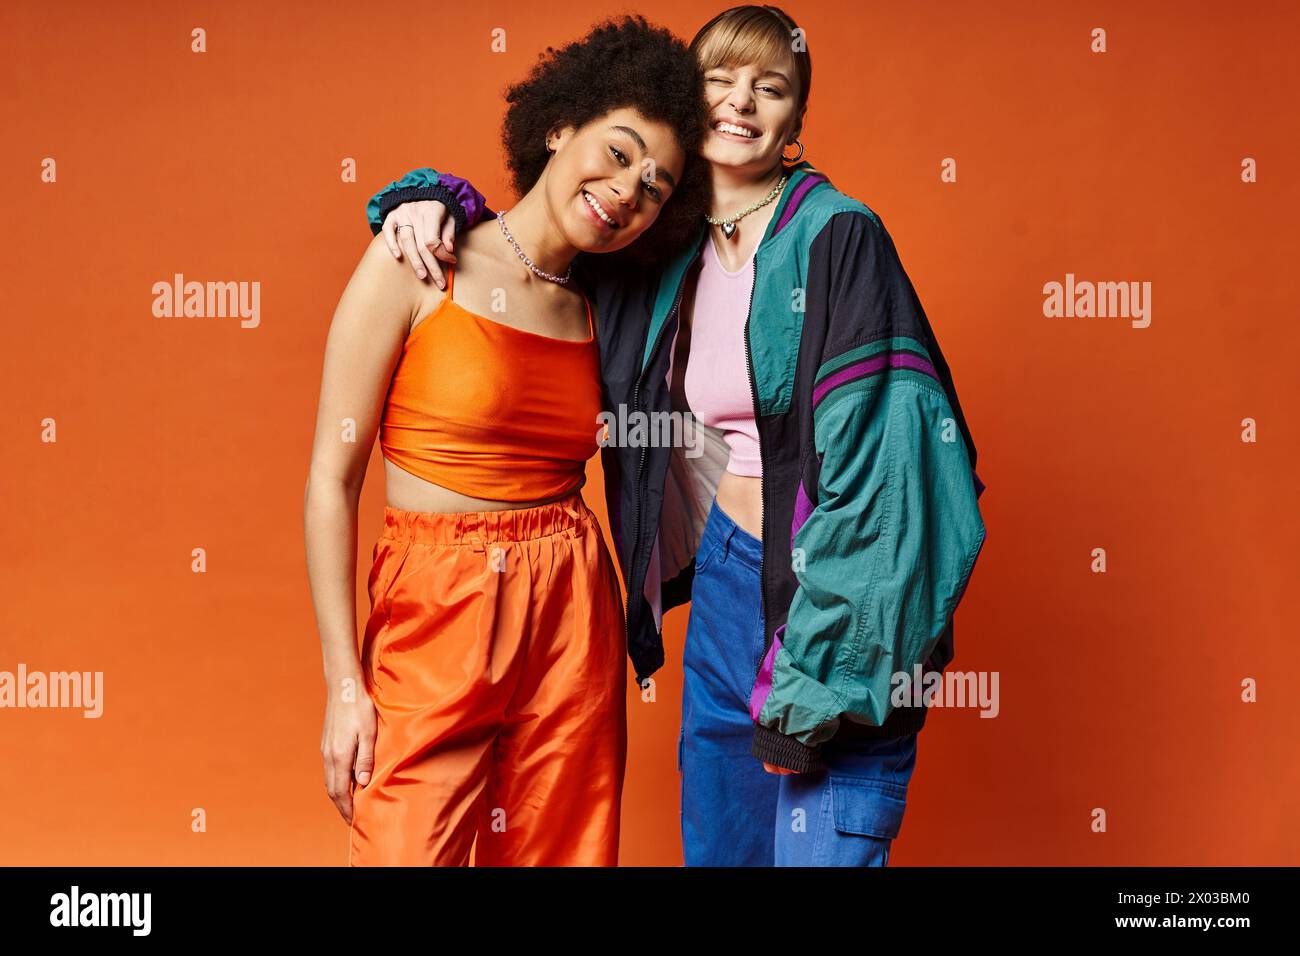 Deux belles femmes de différents horizons culturels debout ensemble dans un studio sur un fond orange. Banque D'Images